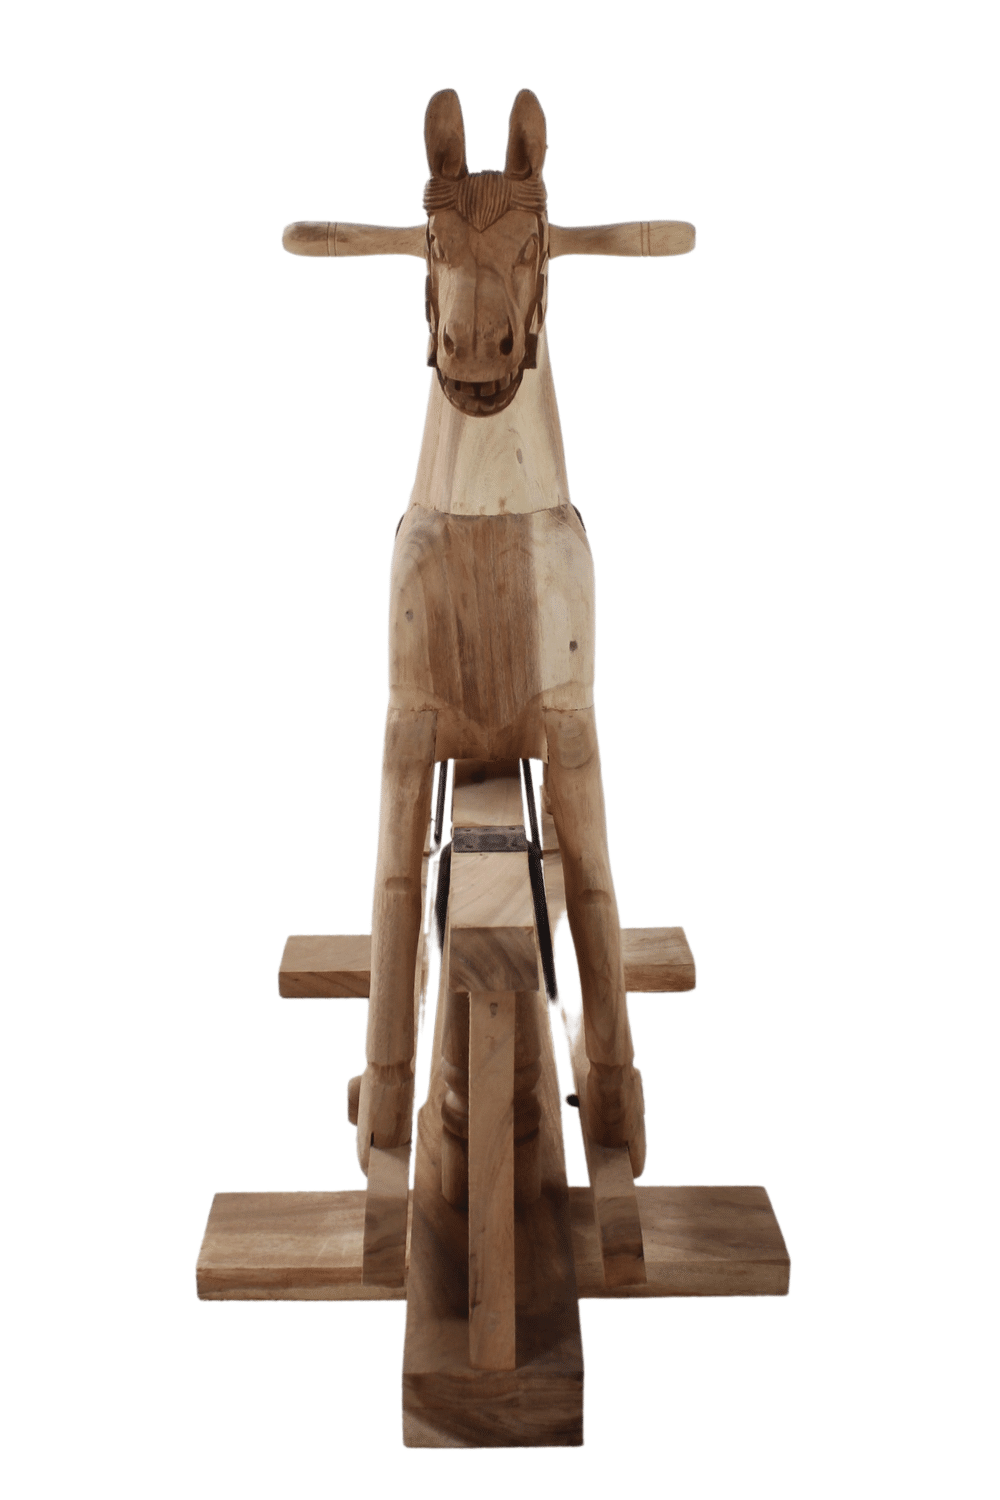 houten Schommel Paard